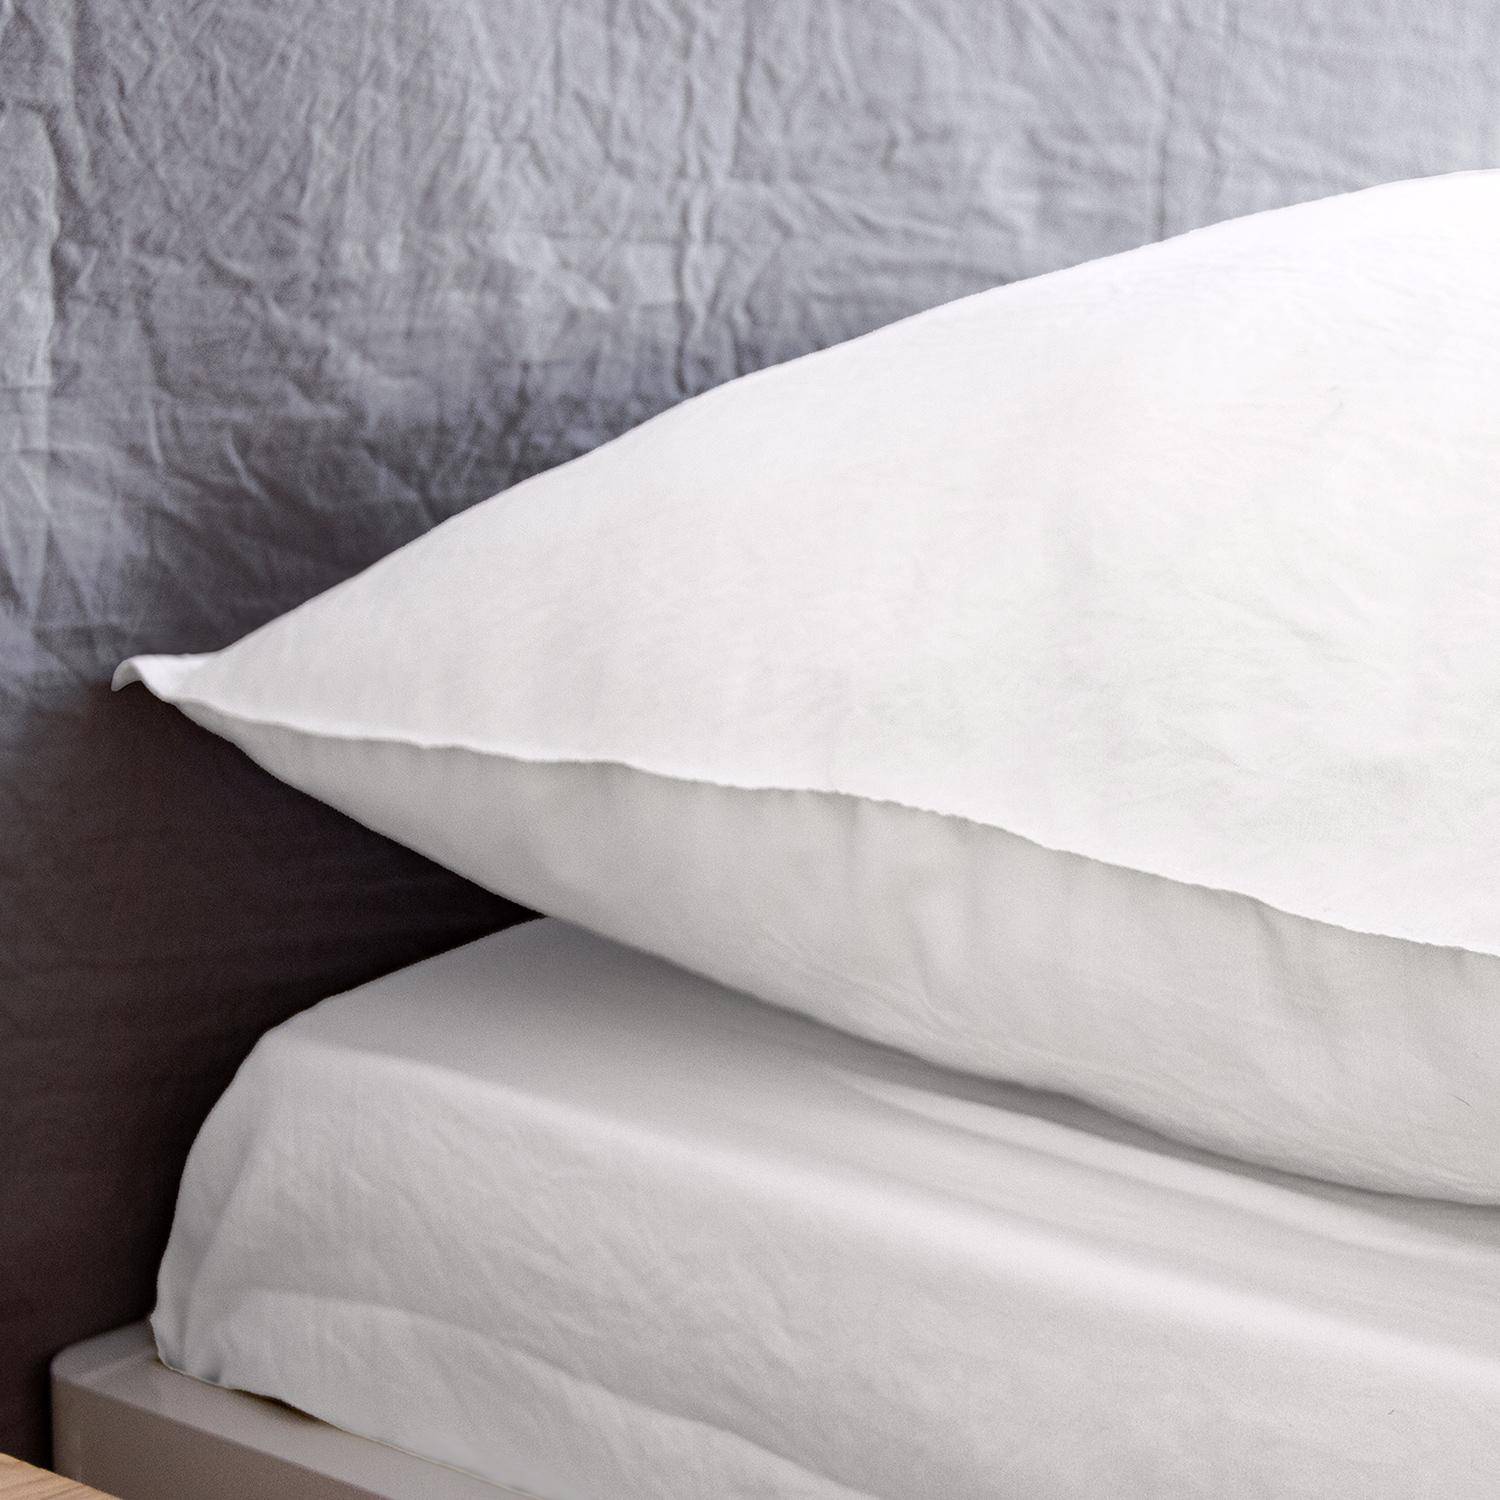 Bettwäsche-Set aus vorgewaschener Mikrofaser in weiß 240 x 220 cm für Doppelbetten, 1 Bettbezug und 2 Kissenbezüge,sweeek,Photo3